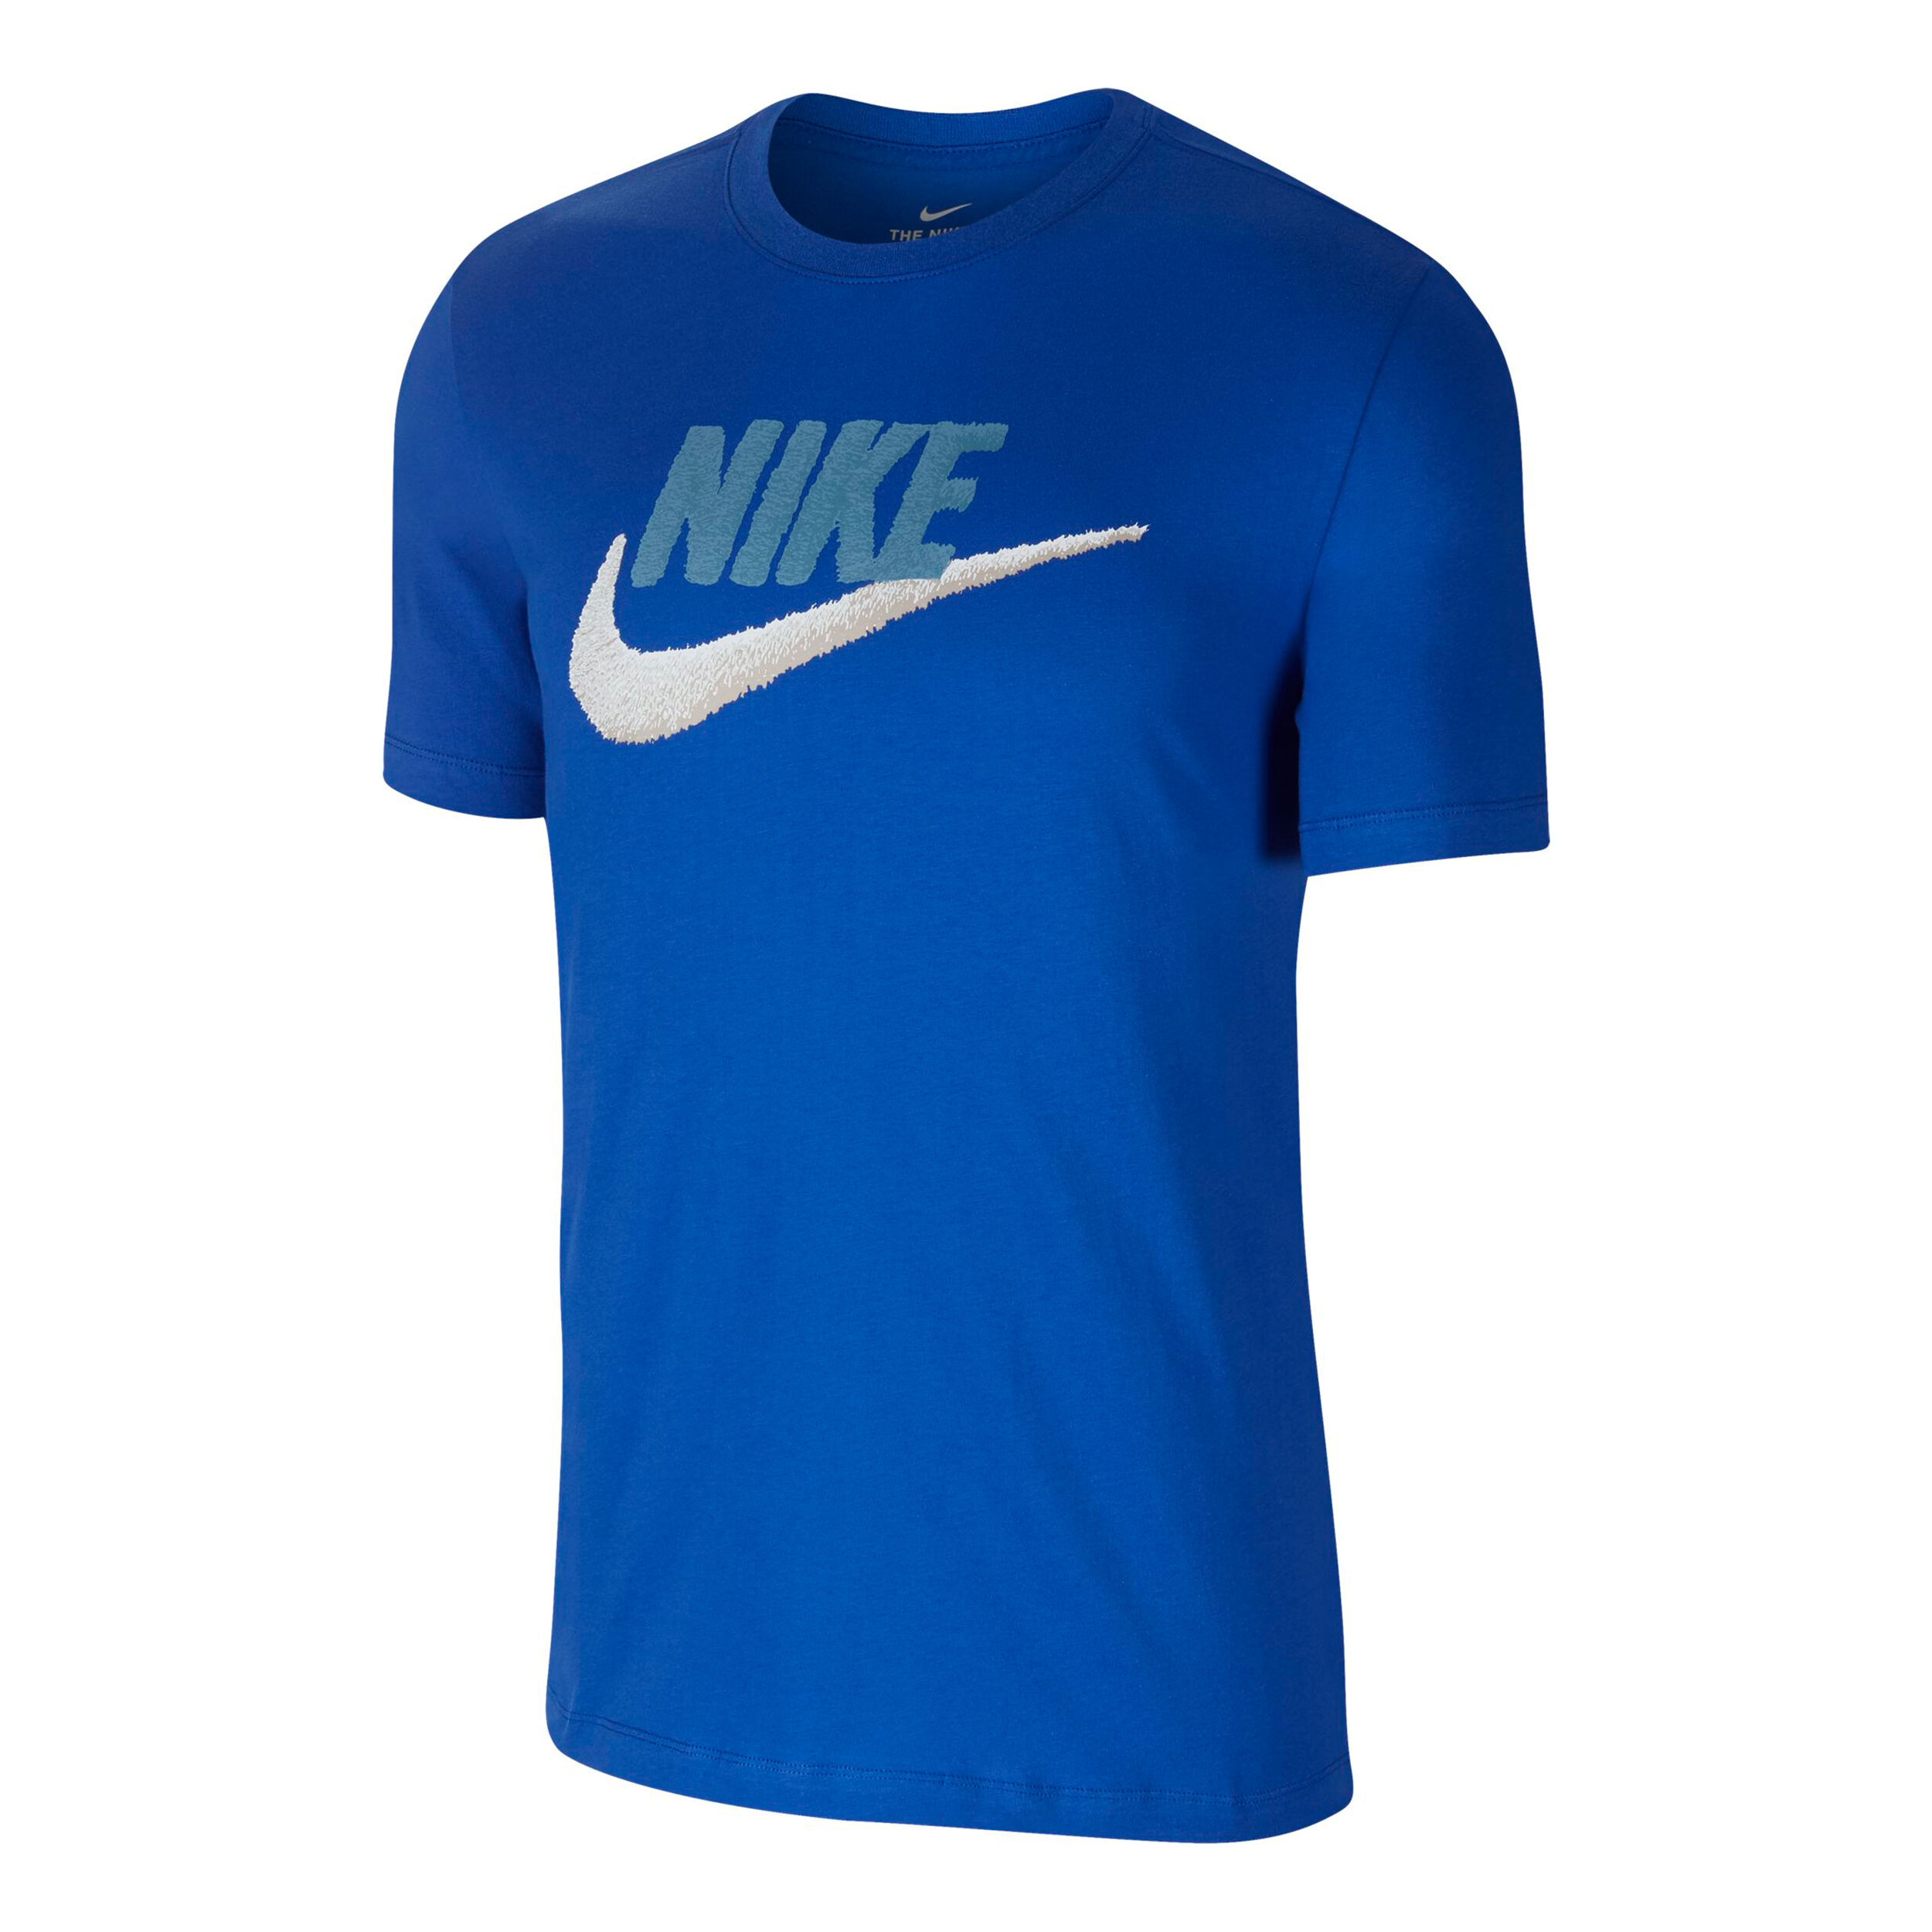 Футболки найк мужские купить. Nike Sportswear Swoosh футболка мужская. Nike футболка NSW. Футболка Nike Sportswear est 1972. Футболка Nike ar3147.